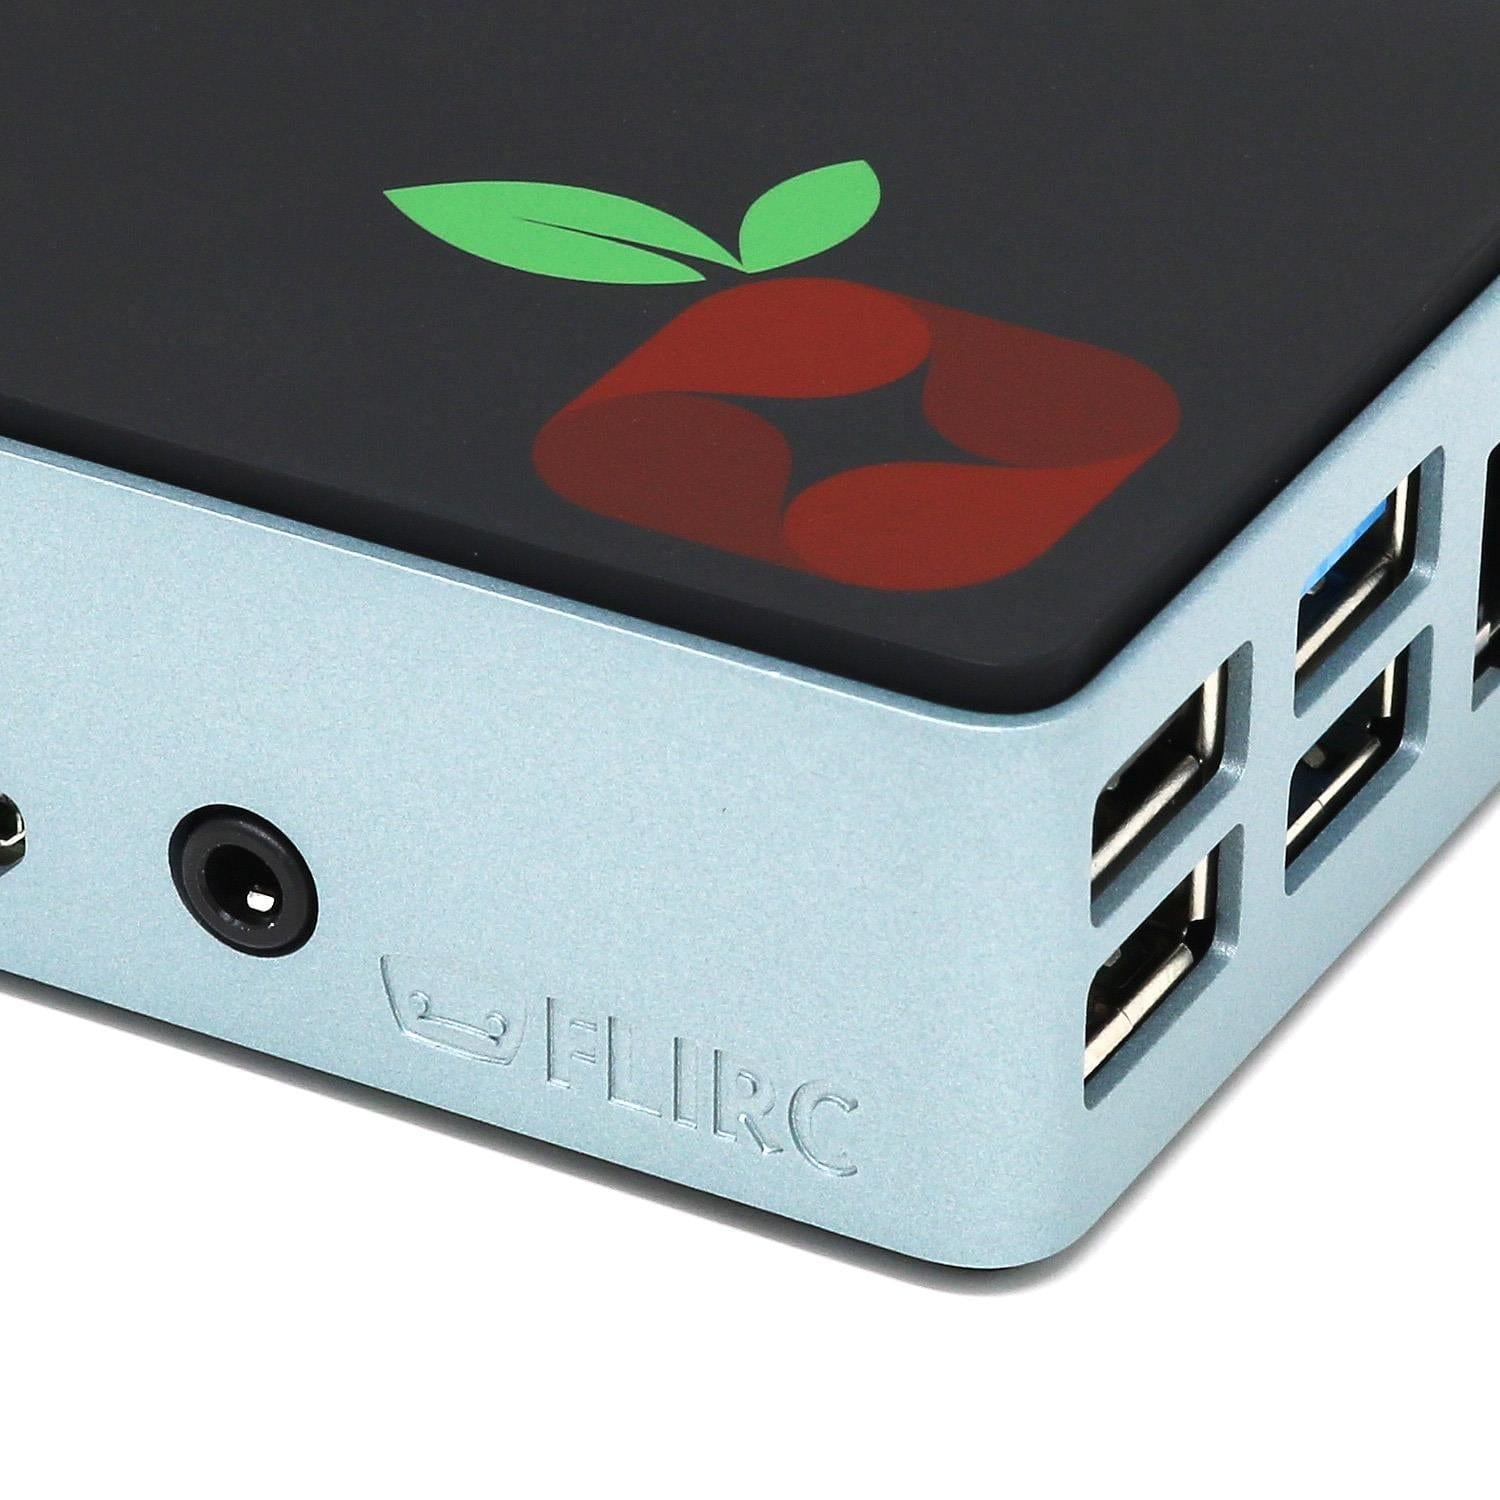 Official Pi-hole Raspberry Pi 4 Kit - The Pi Hut